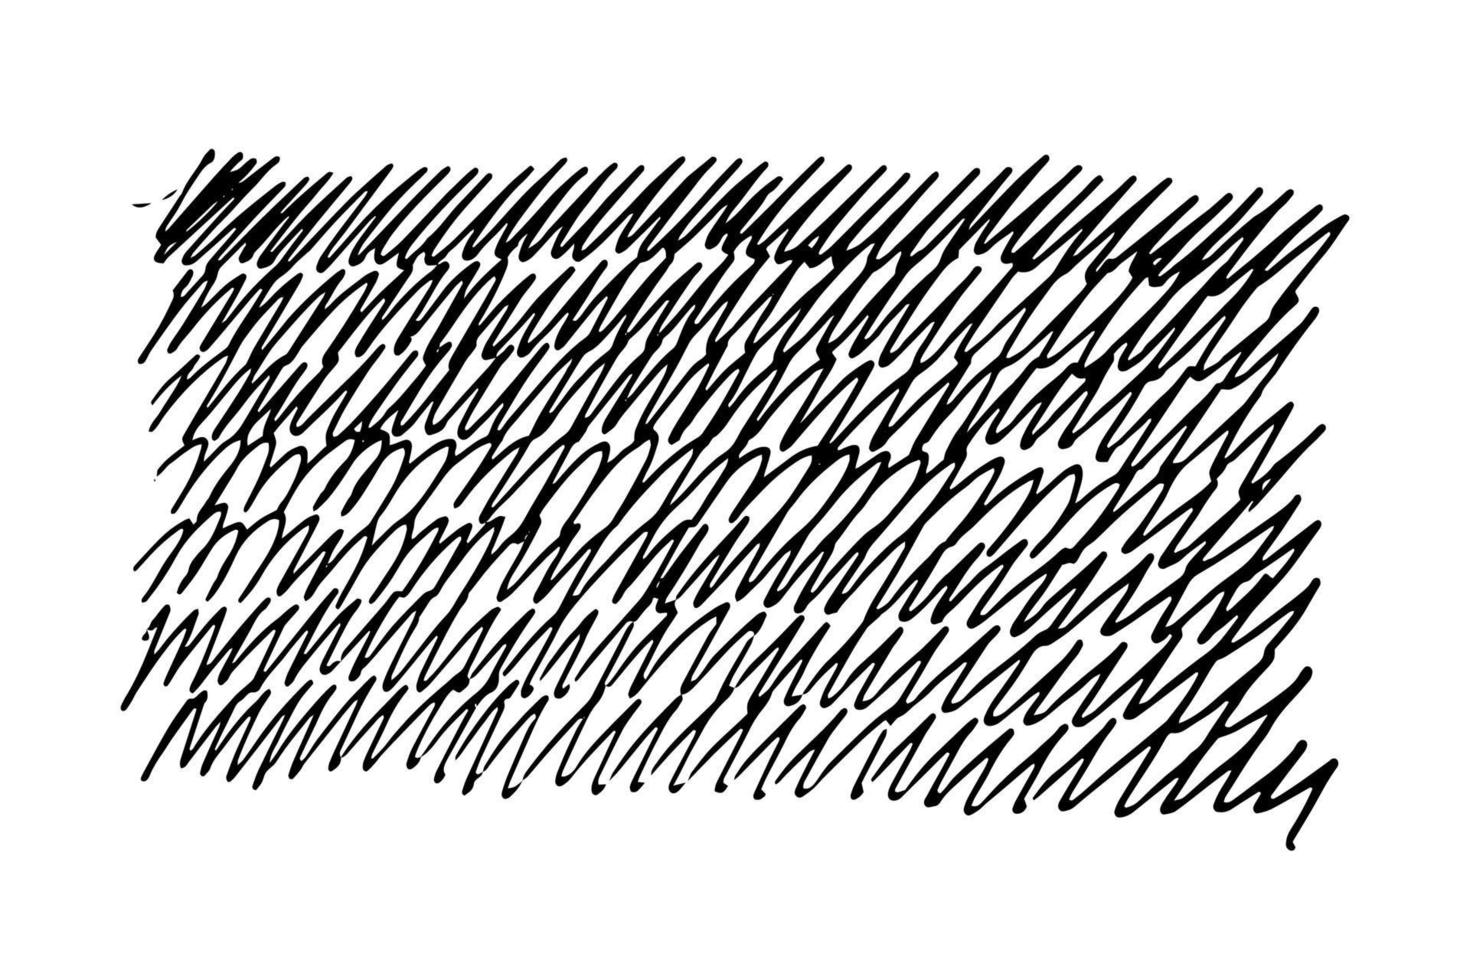 doodle ziguezagues estilo do doodle. pintura de fundo com marcador desenhado à mão descuidadamente - ilustração do vetor isolada no fundo branco. repetindo caligrafia